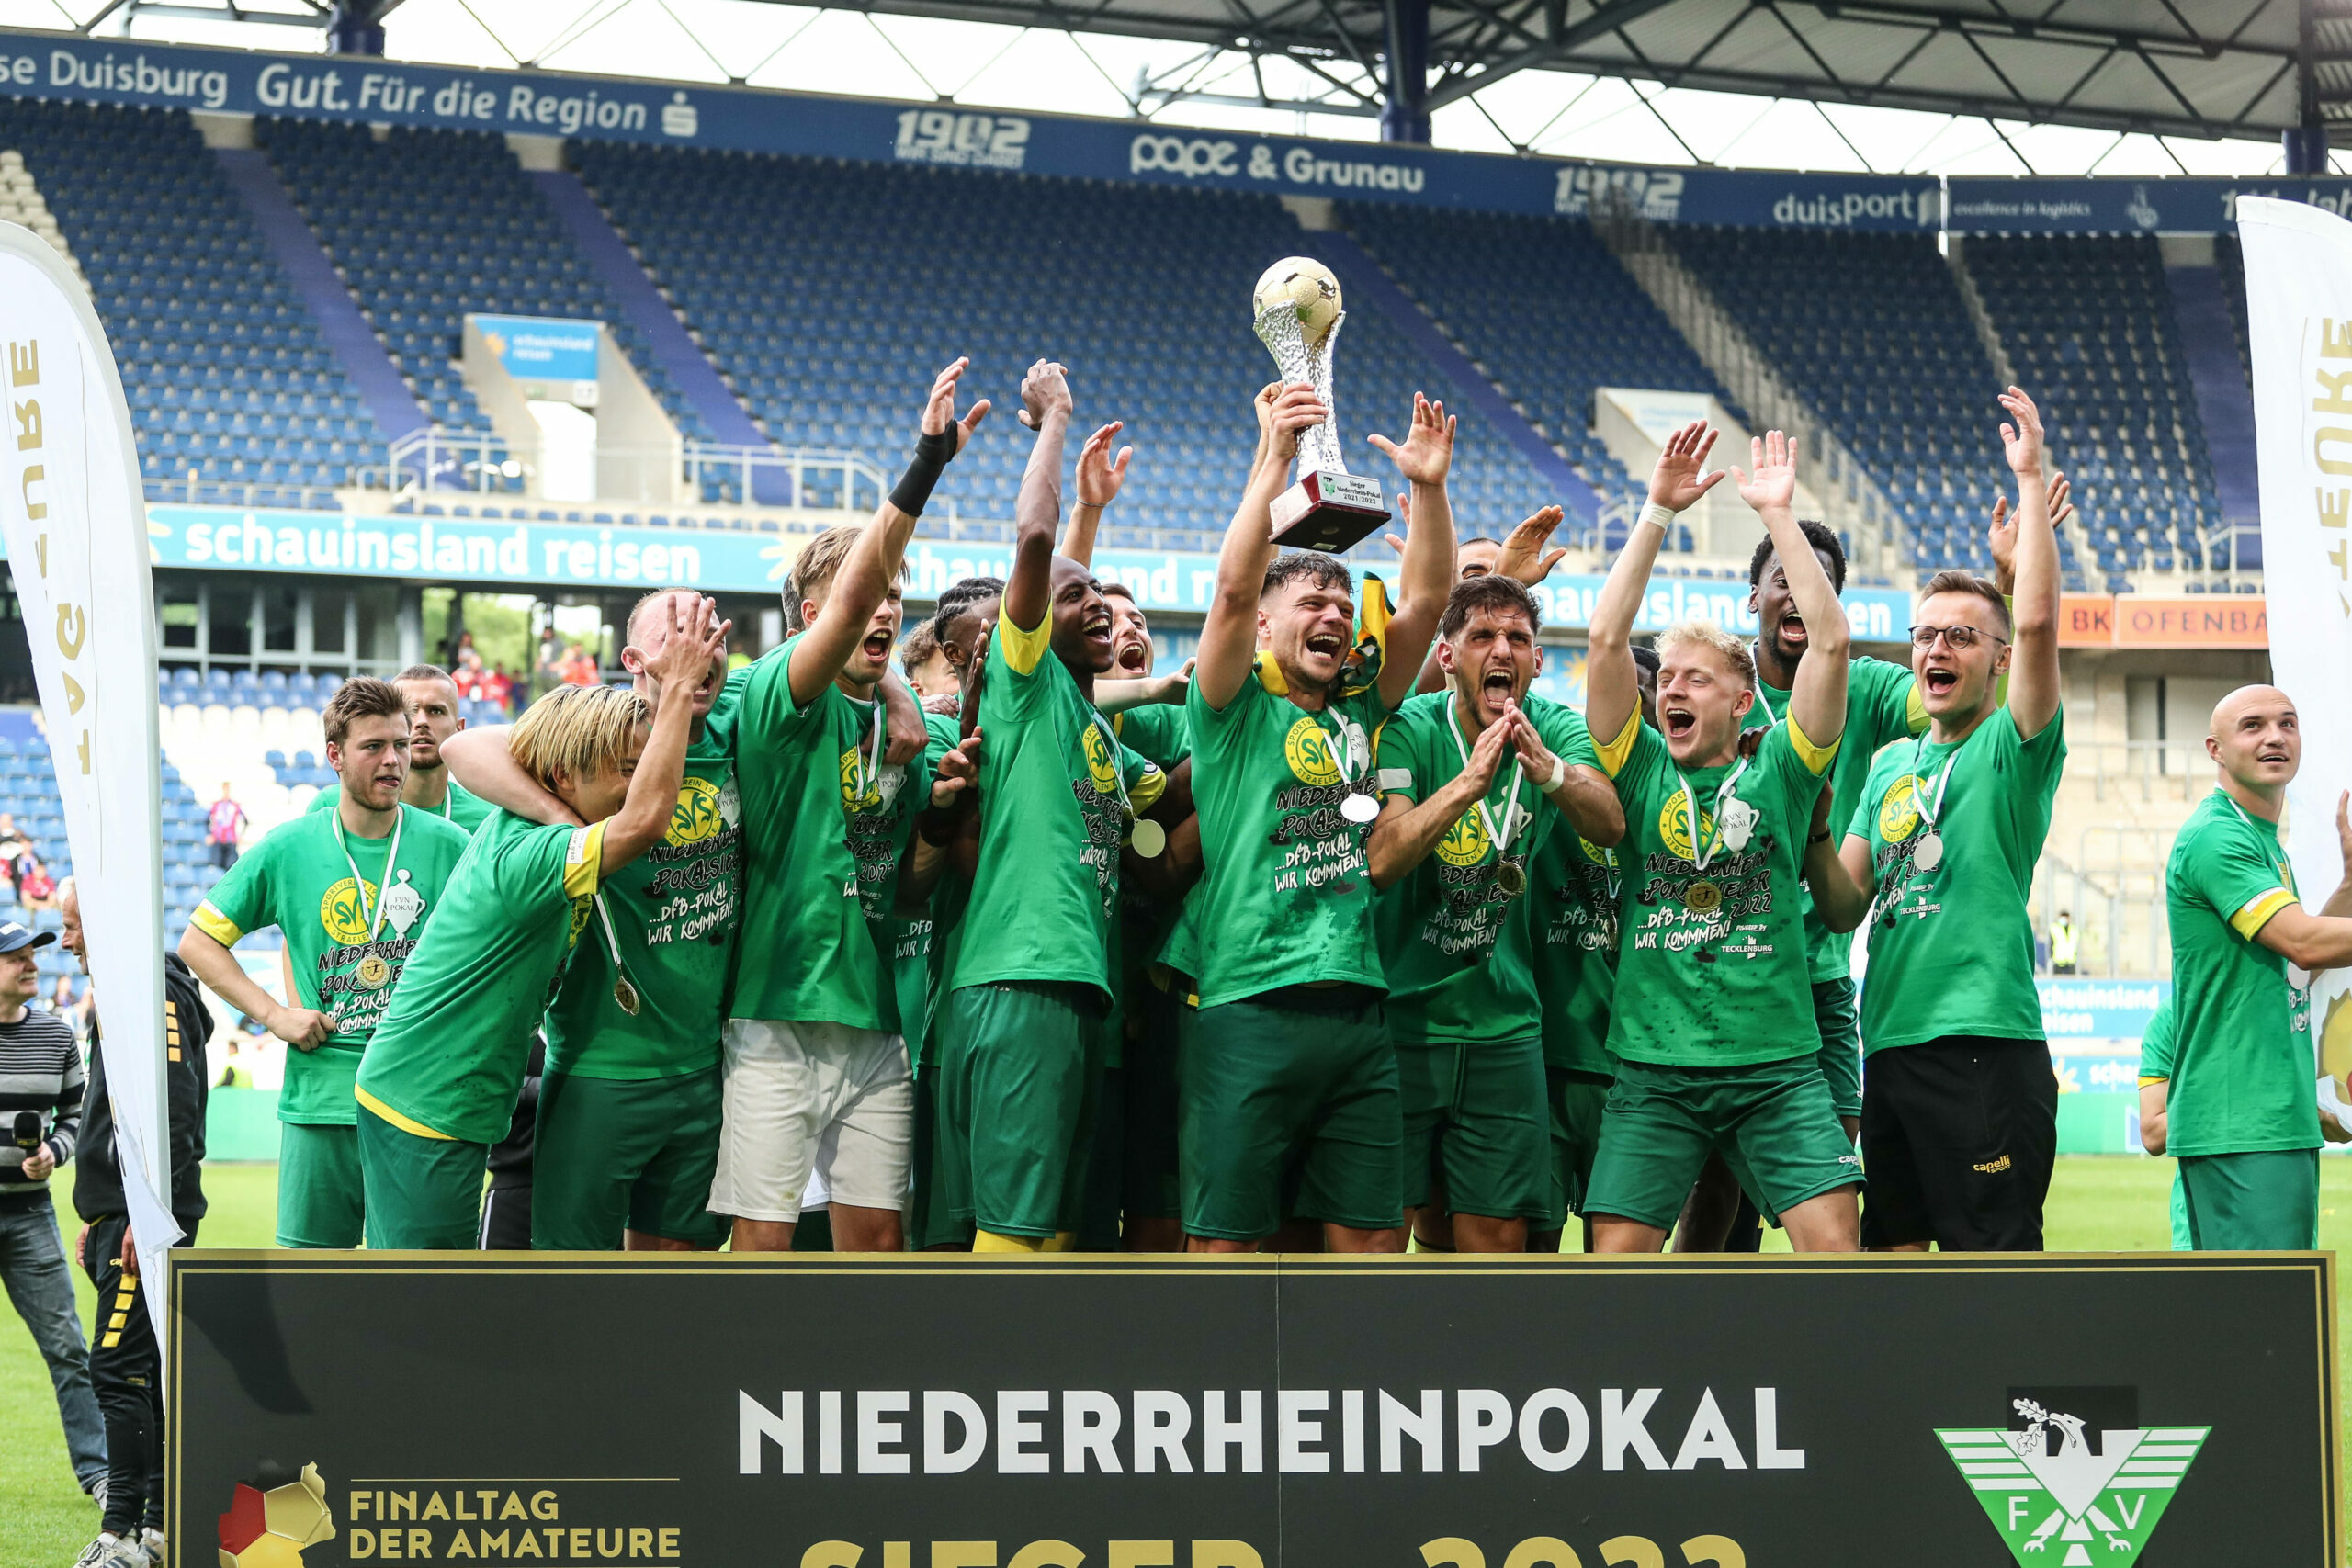 Mit dem Sieg im Niederrhein-Pokal qualifizierte sich Straelen für den DFB-Pokal – und hofft nun auf viele Fans in Duisburg.